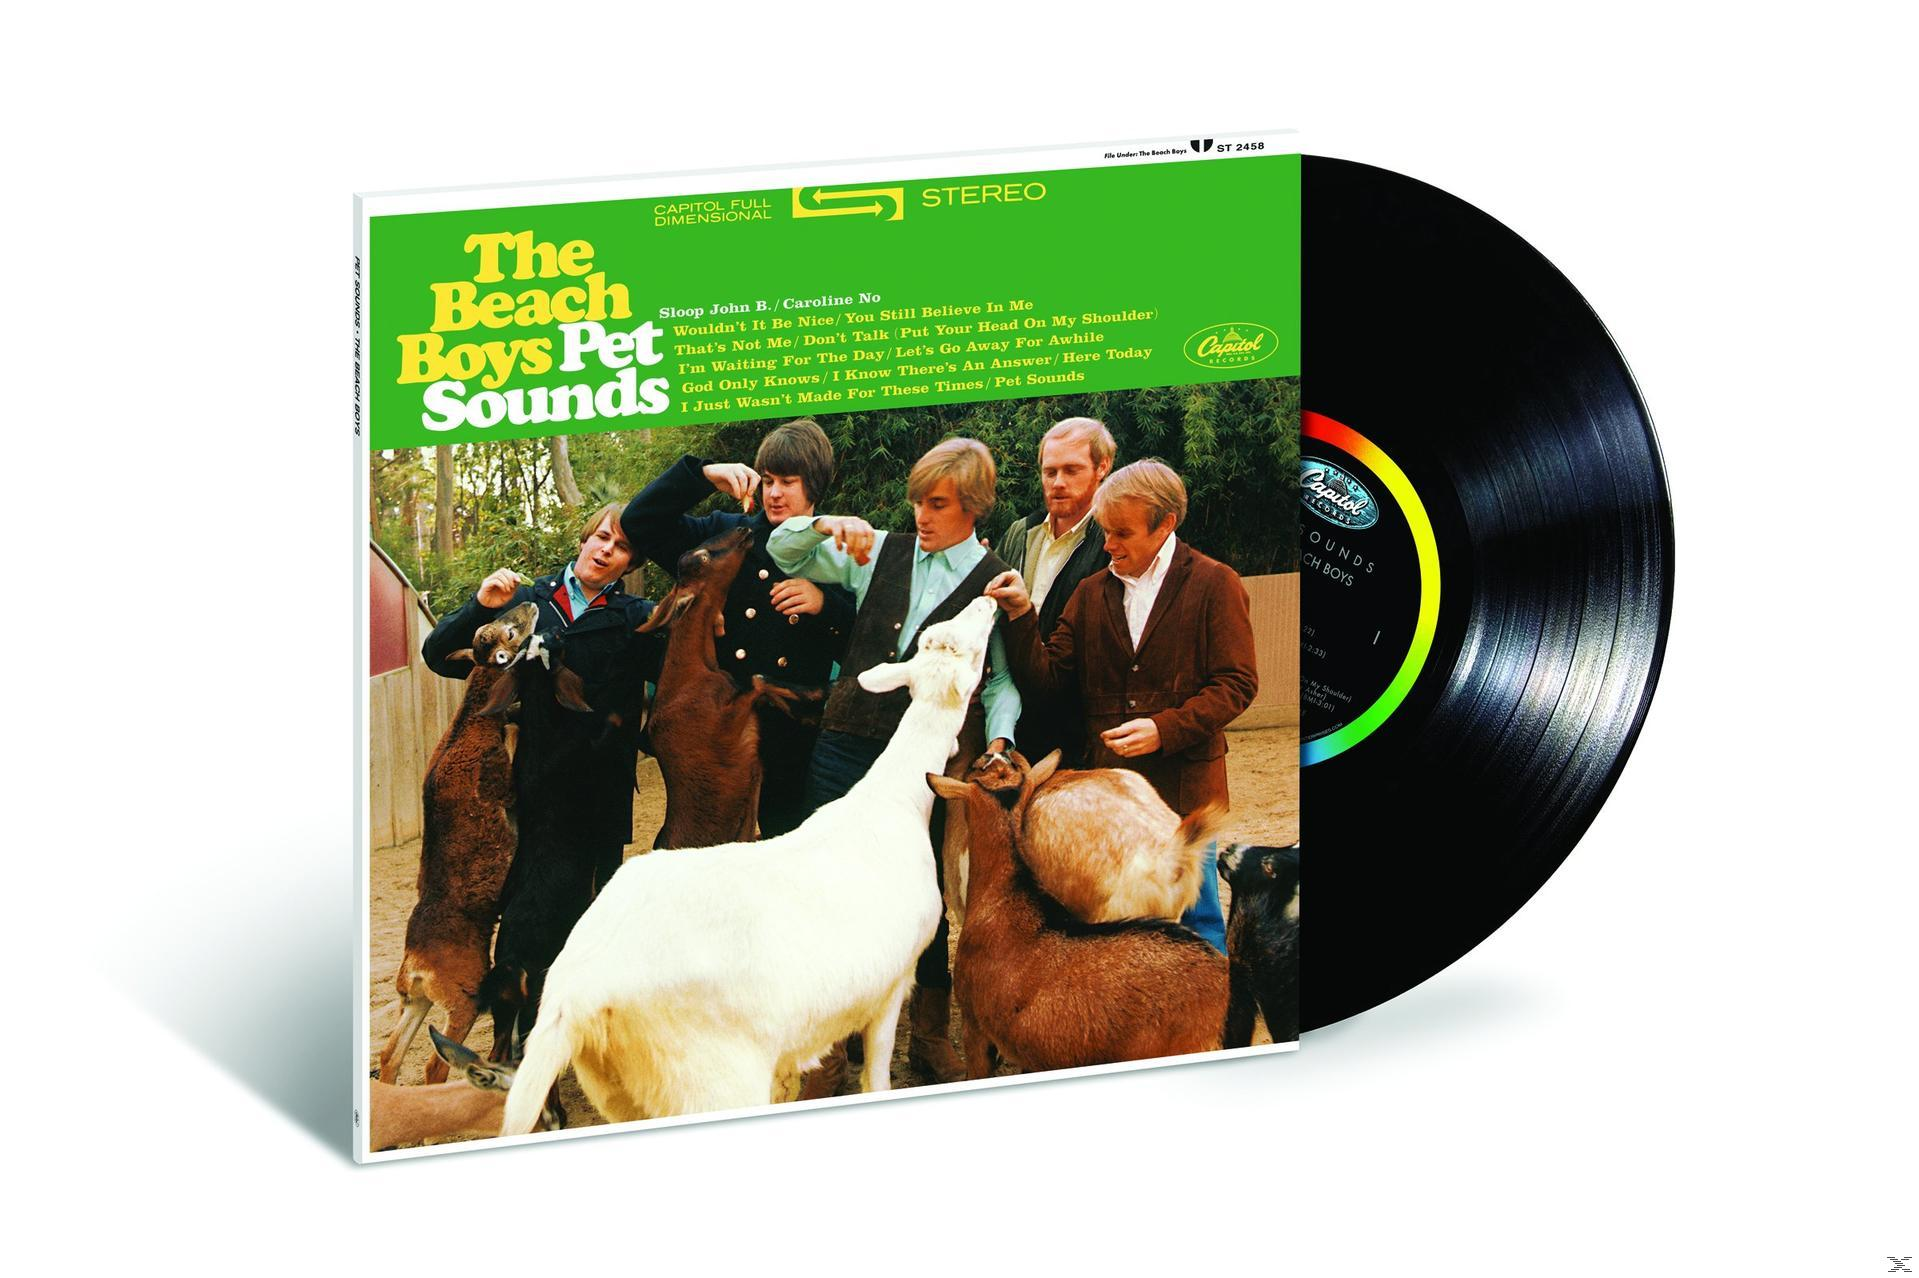 The Beach Boys - Pet Vinyl Reissue) 180g Sounds - (Vinyl) (Stereo